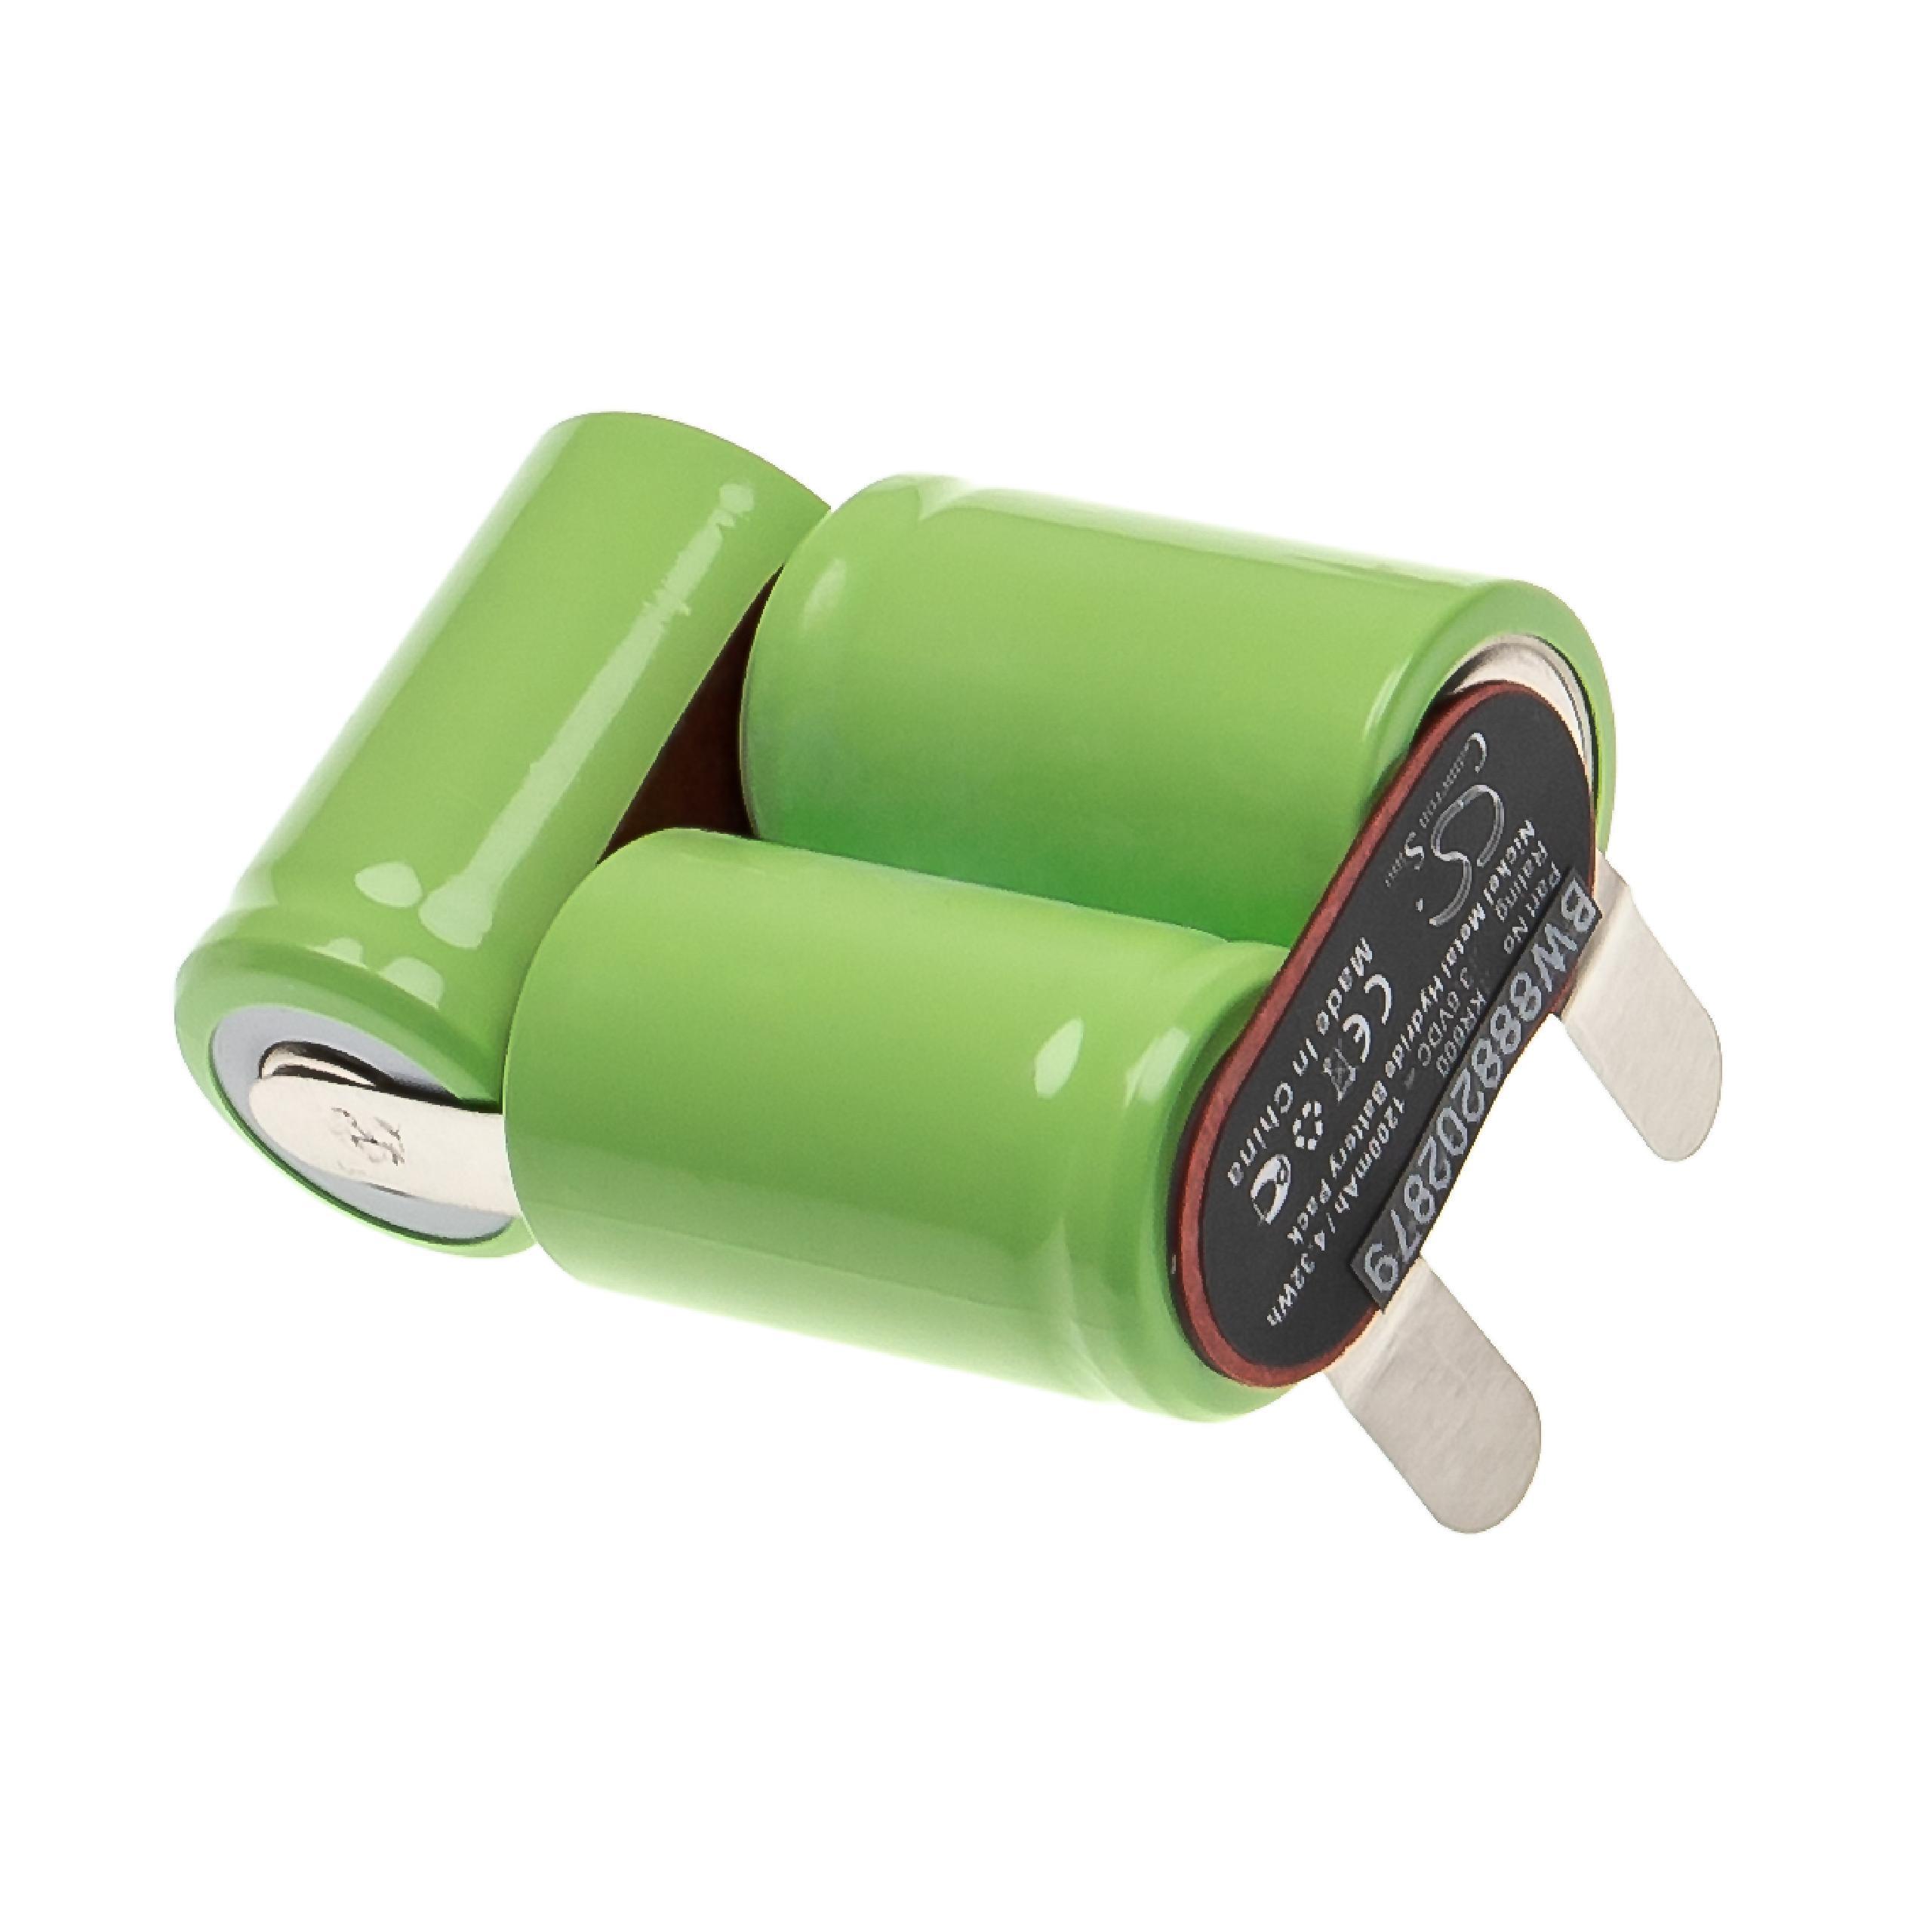 Batterie remplace Wella KR600 pour rasoir électrique - 1200mAh 3,6V NiMH